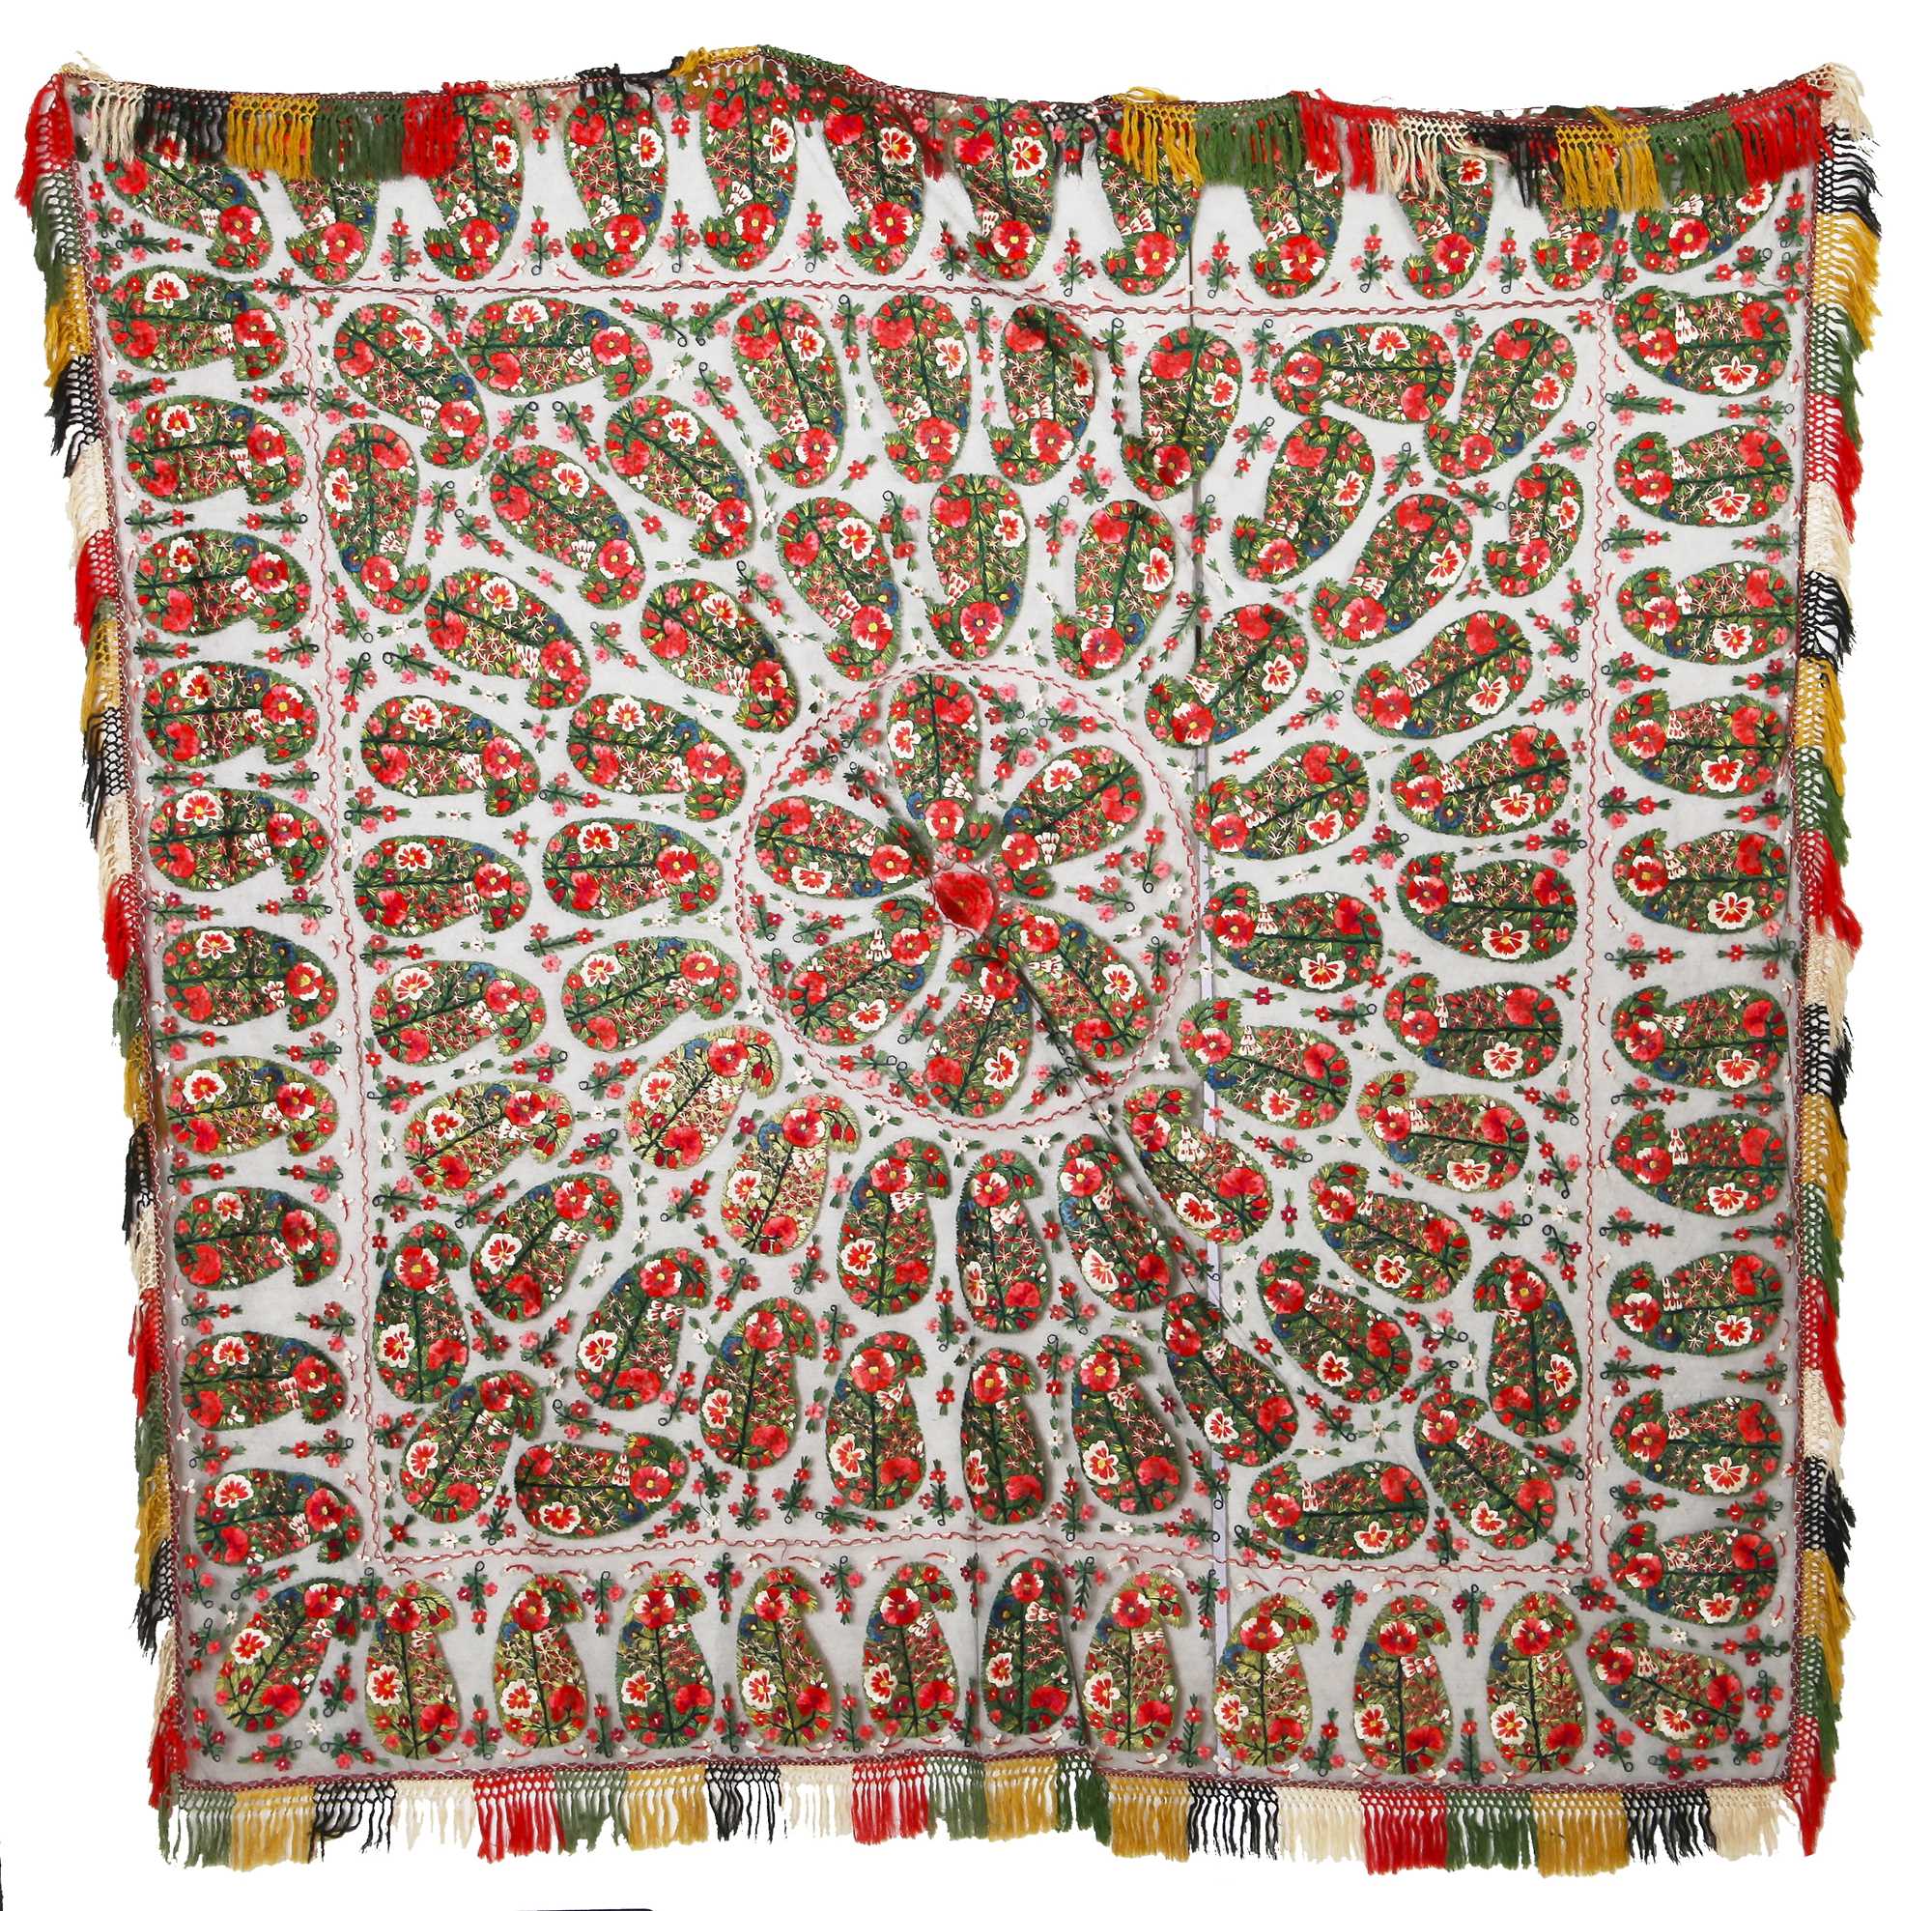 Lot 445 - A fine embroidered square shawl, Delhi, India, 1830s